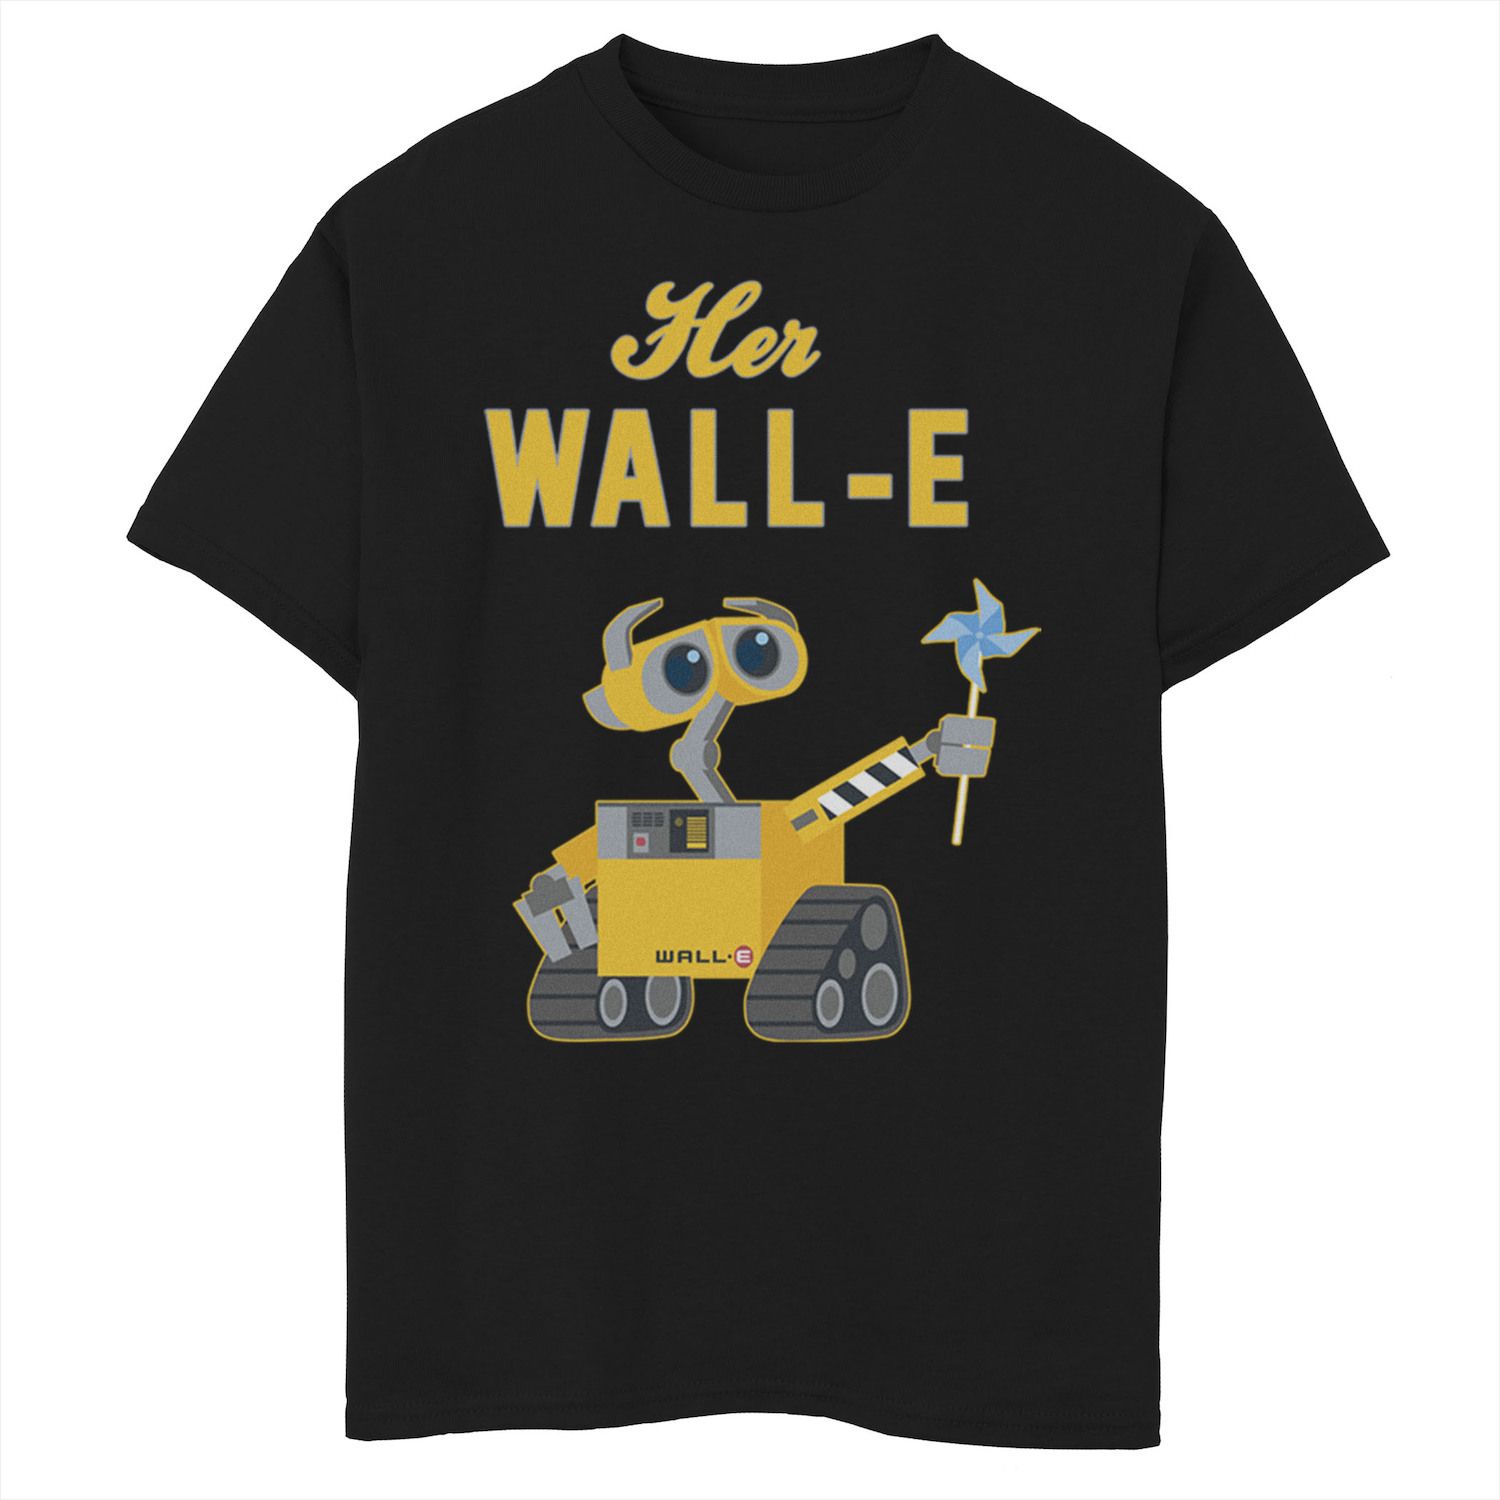 Футболка Wall-E Her Wall-E для мальчиков 8–20 лет Disney/Pixar Disney / Pixar wall e robot pvc action figure collection model disney pixar